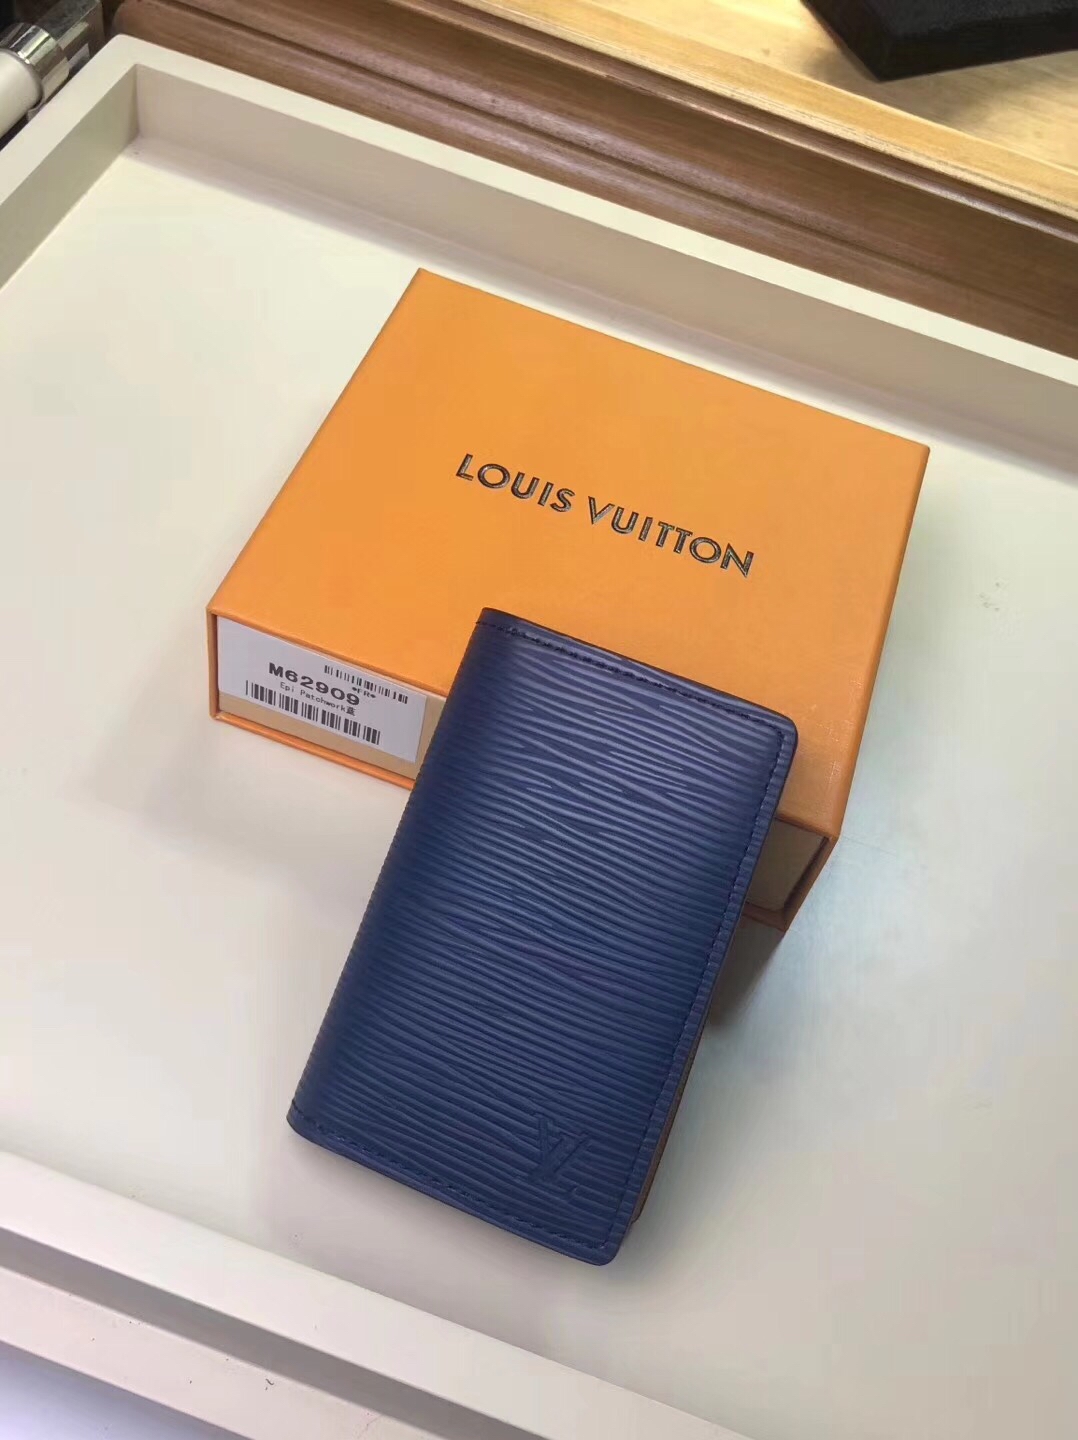 At Auction: Louis Vuitton, Louis Vuitton Pocket Organizer Limited